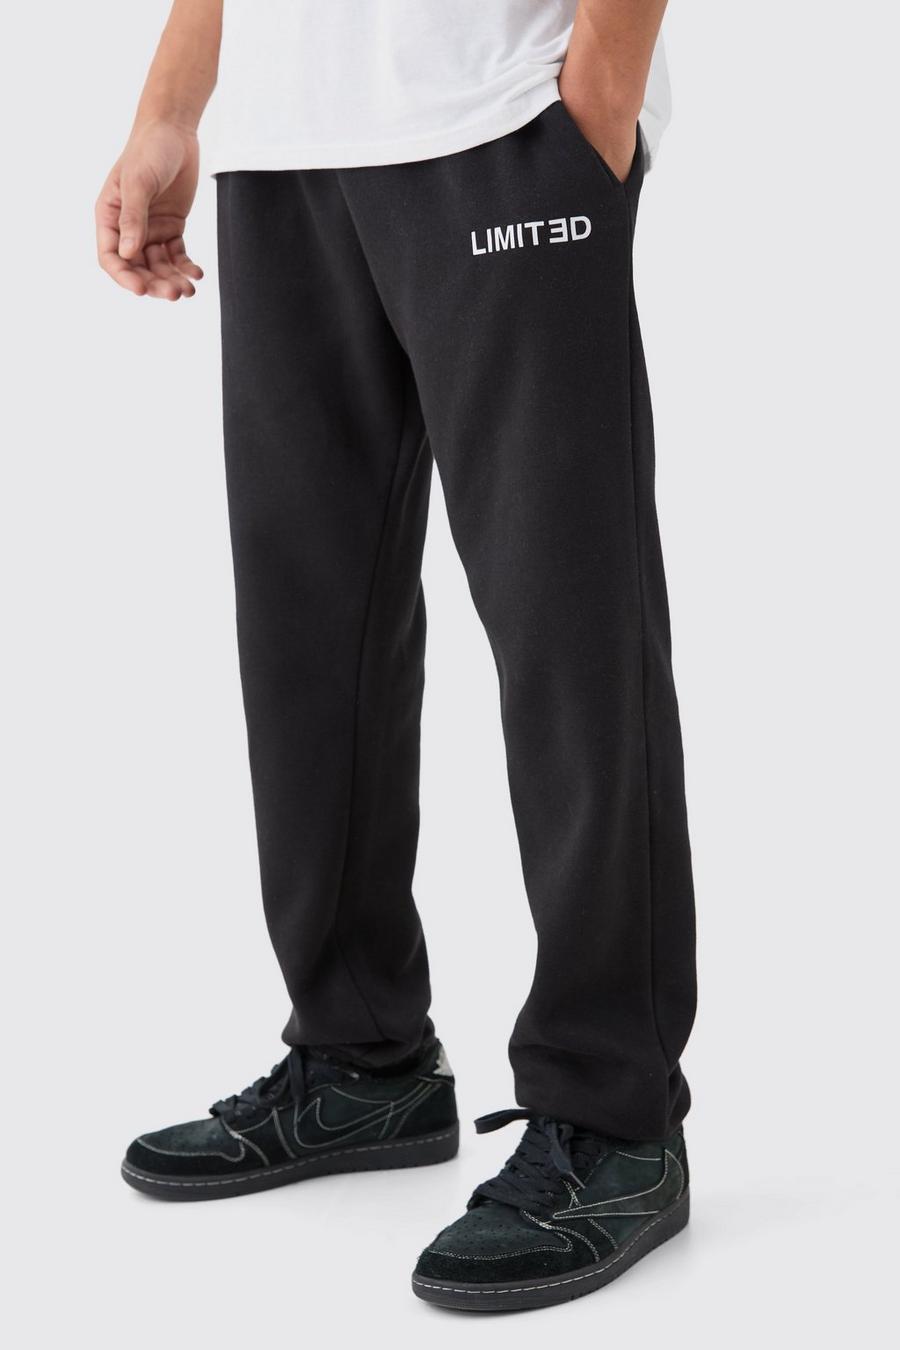 Pantalón deportivo Regular Limited, Black